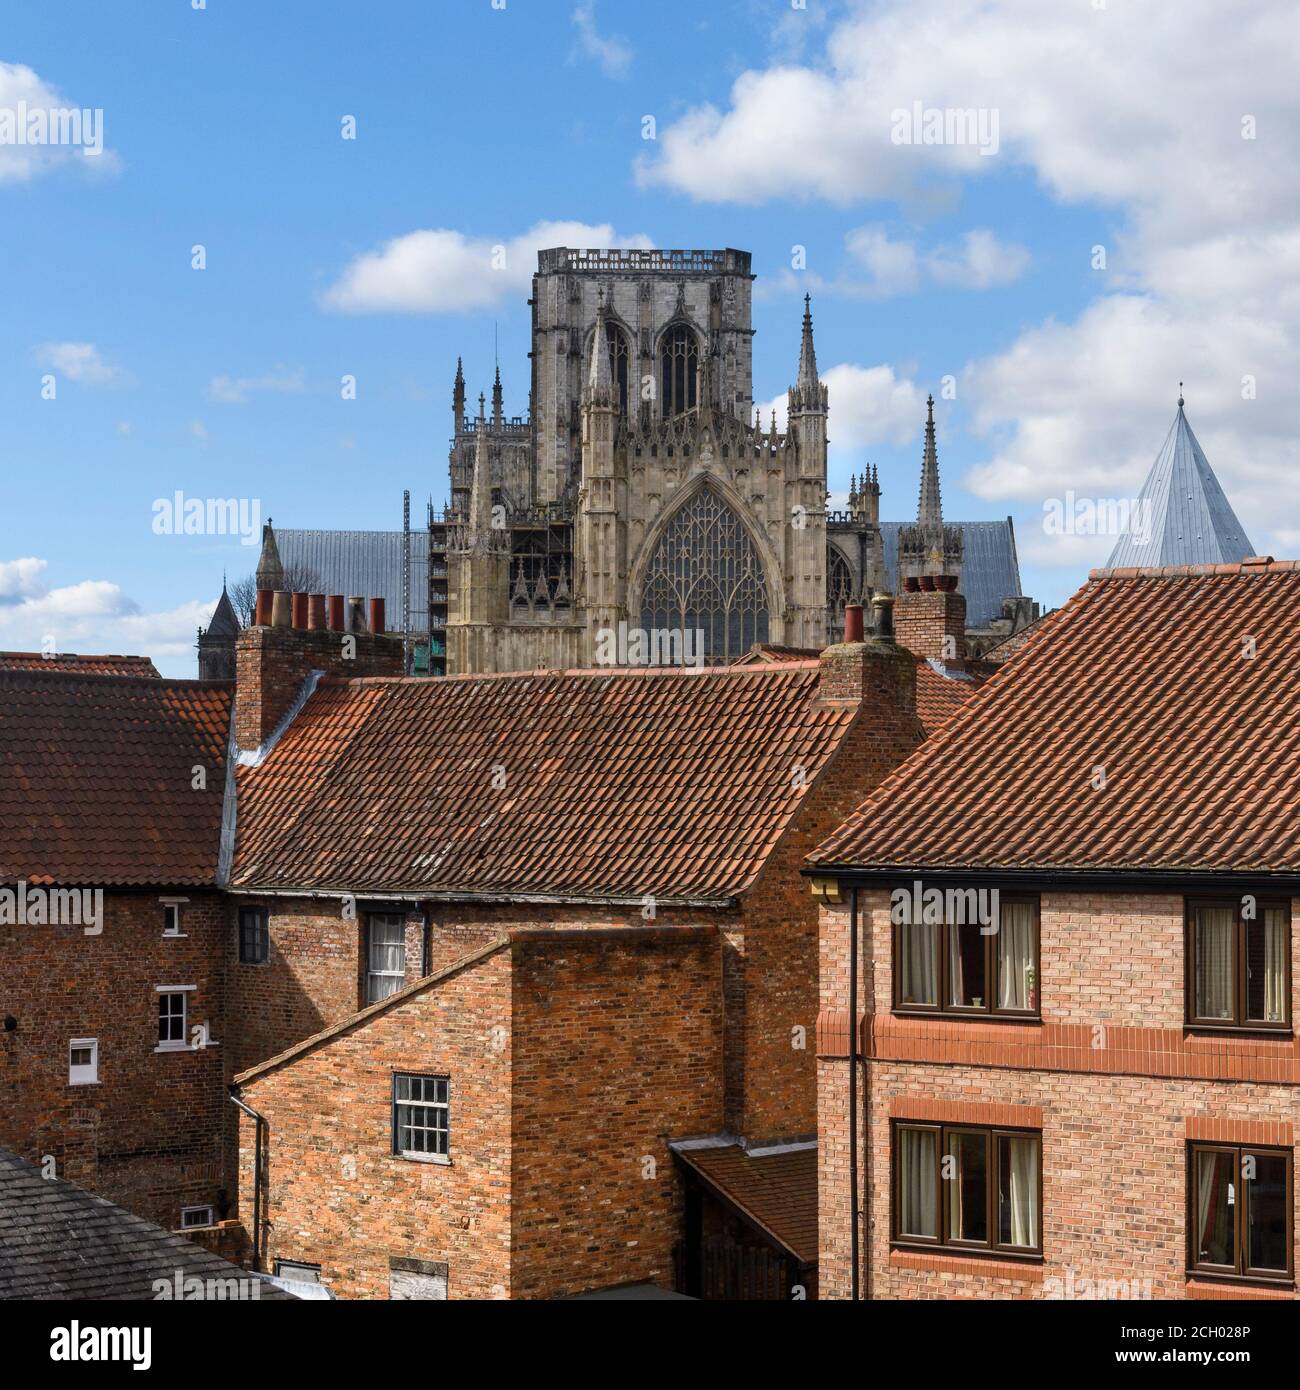 York Minster torreggia su moderne e storiche case in mattoni in scenografica città residenziale (vista sui tetti rossi) - Nord Yorkshire, Inghilterra, Regno Unito. Foto Stock